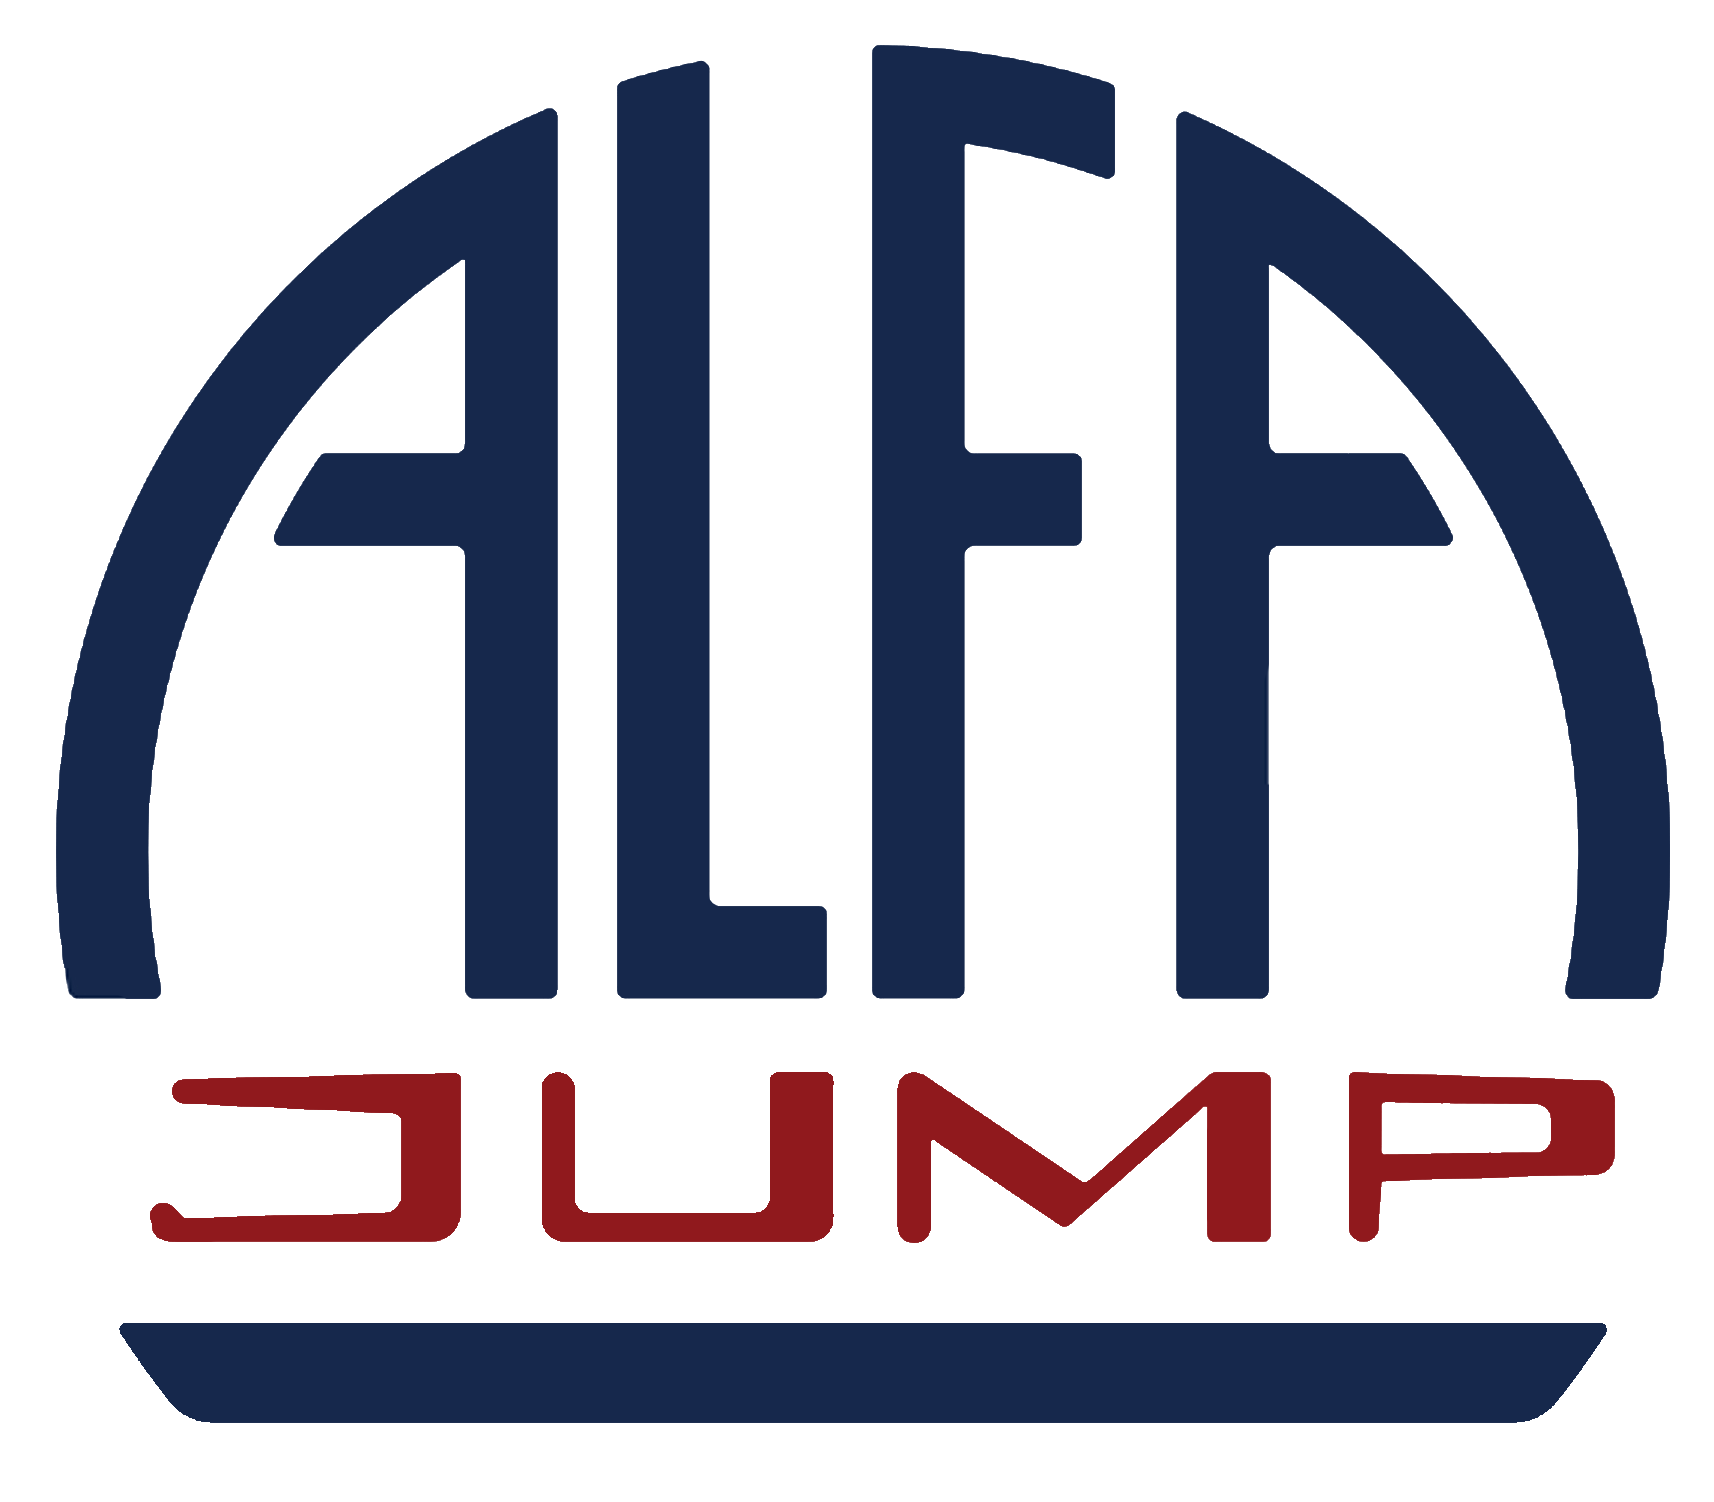 Alfa Jump